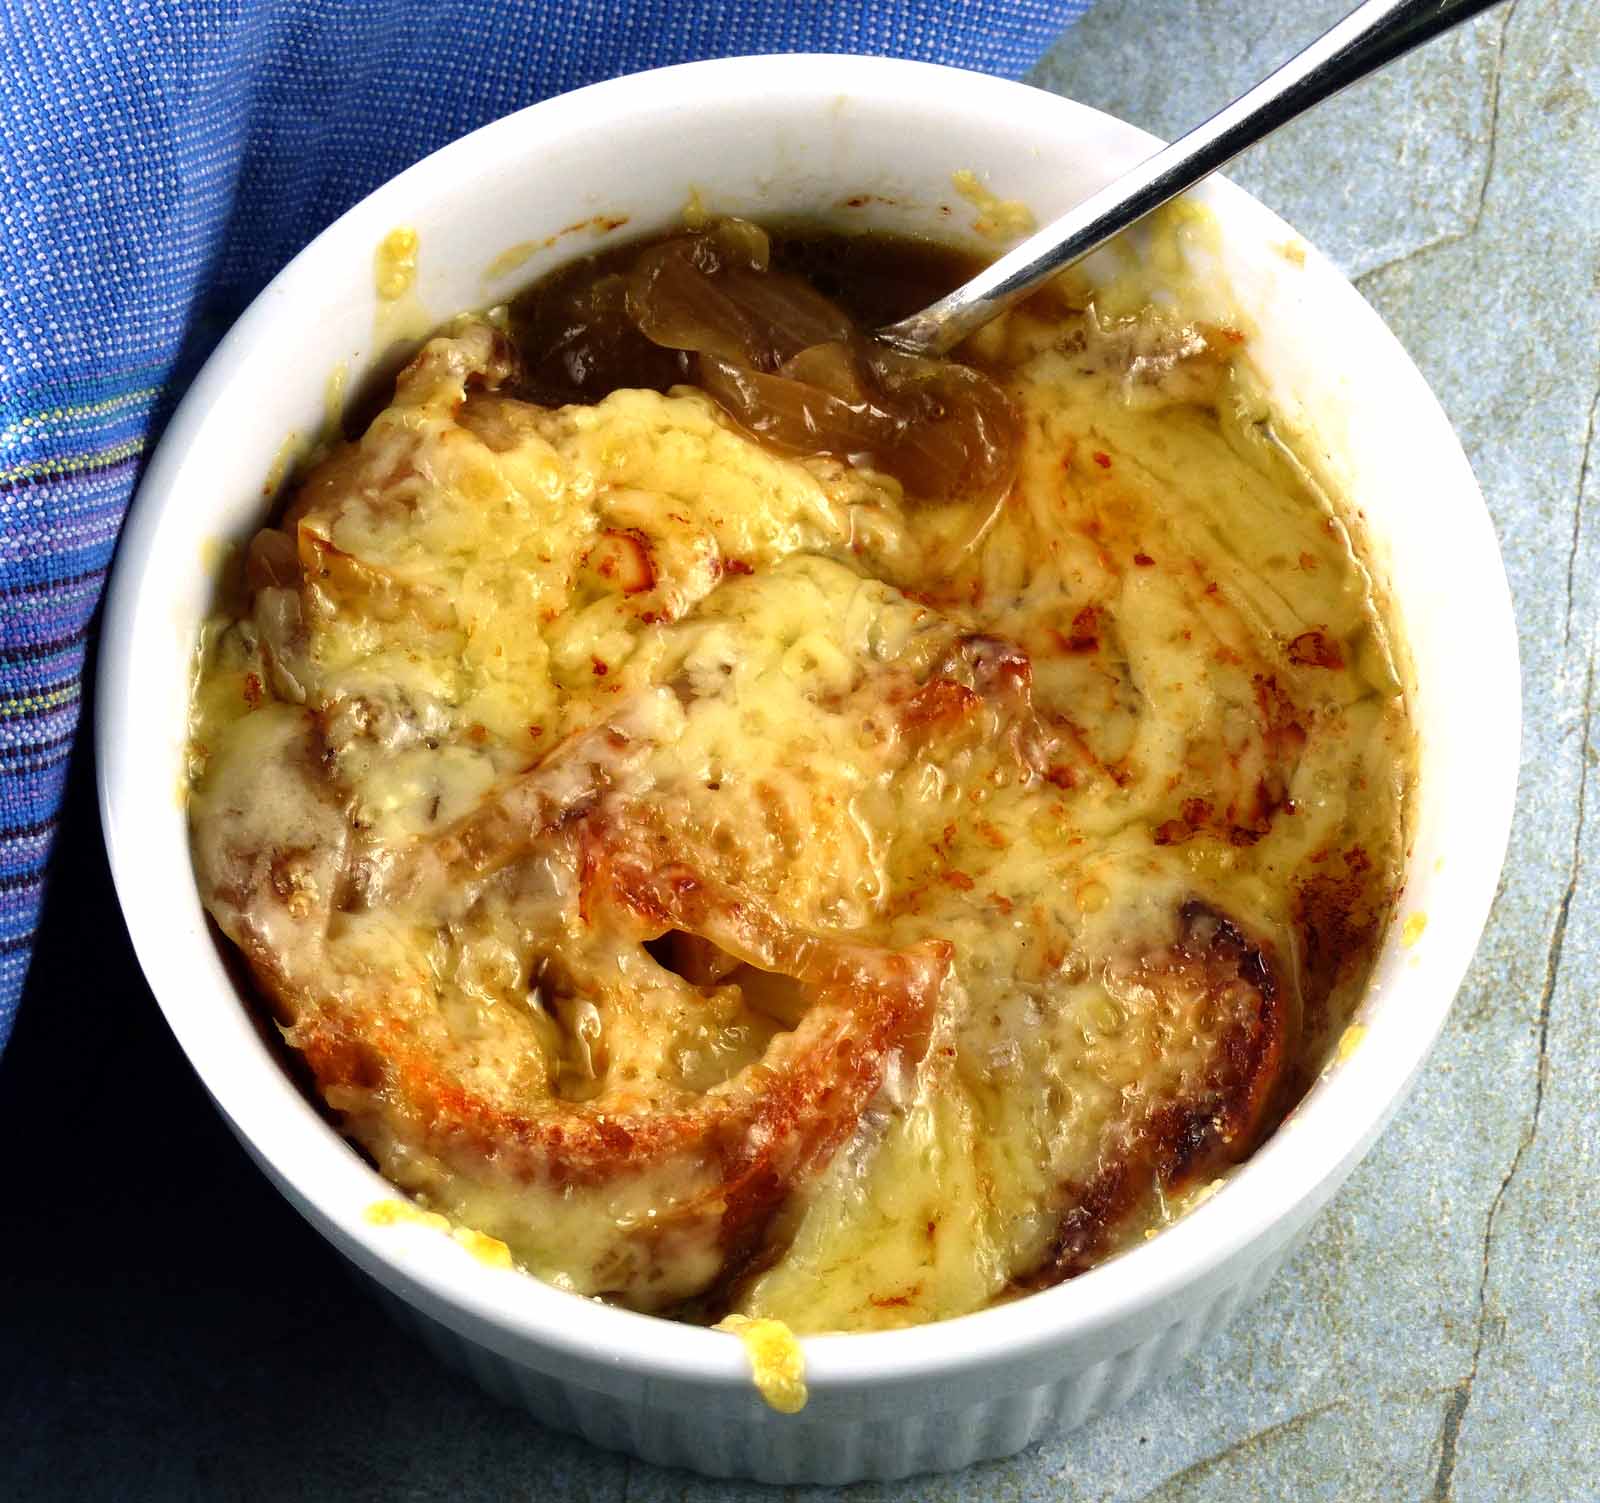 French Onion Soup (Soupe à l'Oignon Gratinée) Recipe